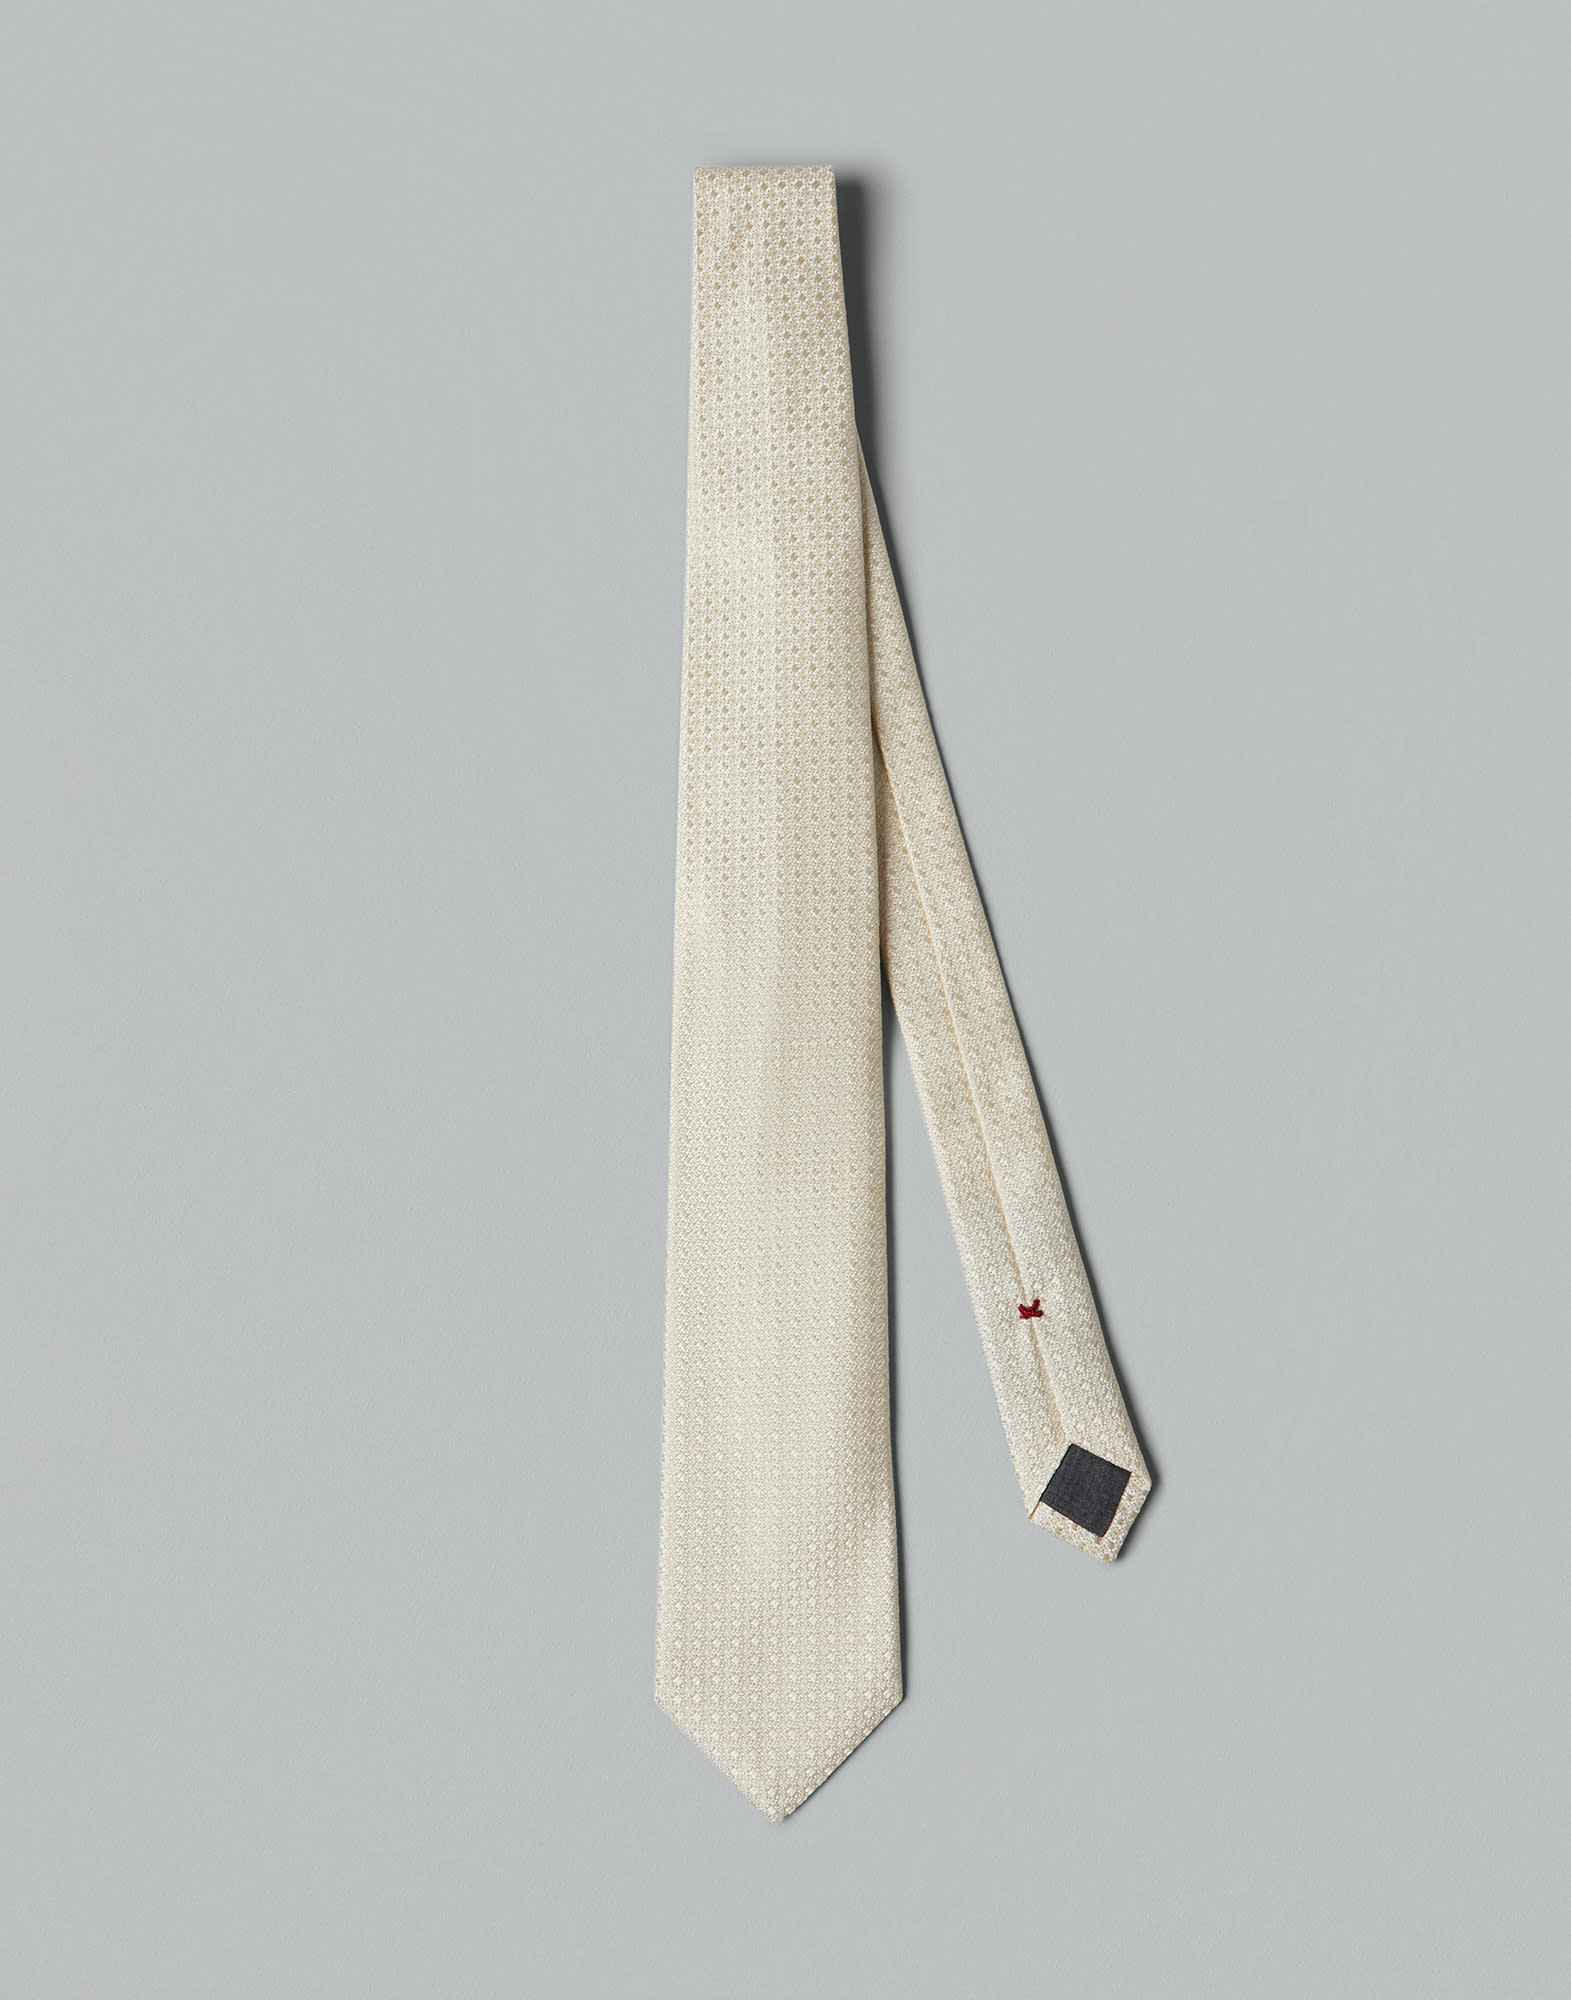 Krawatte aus Seide